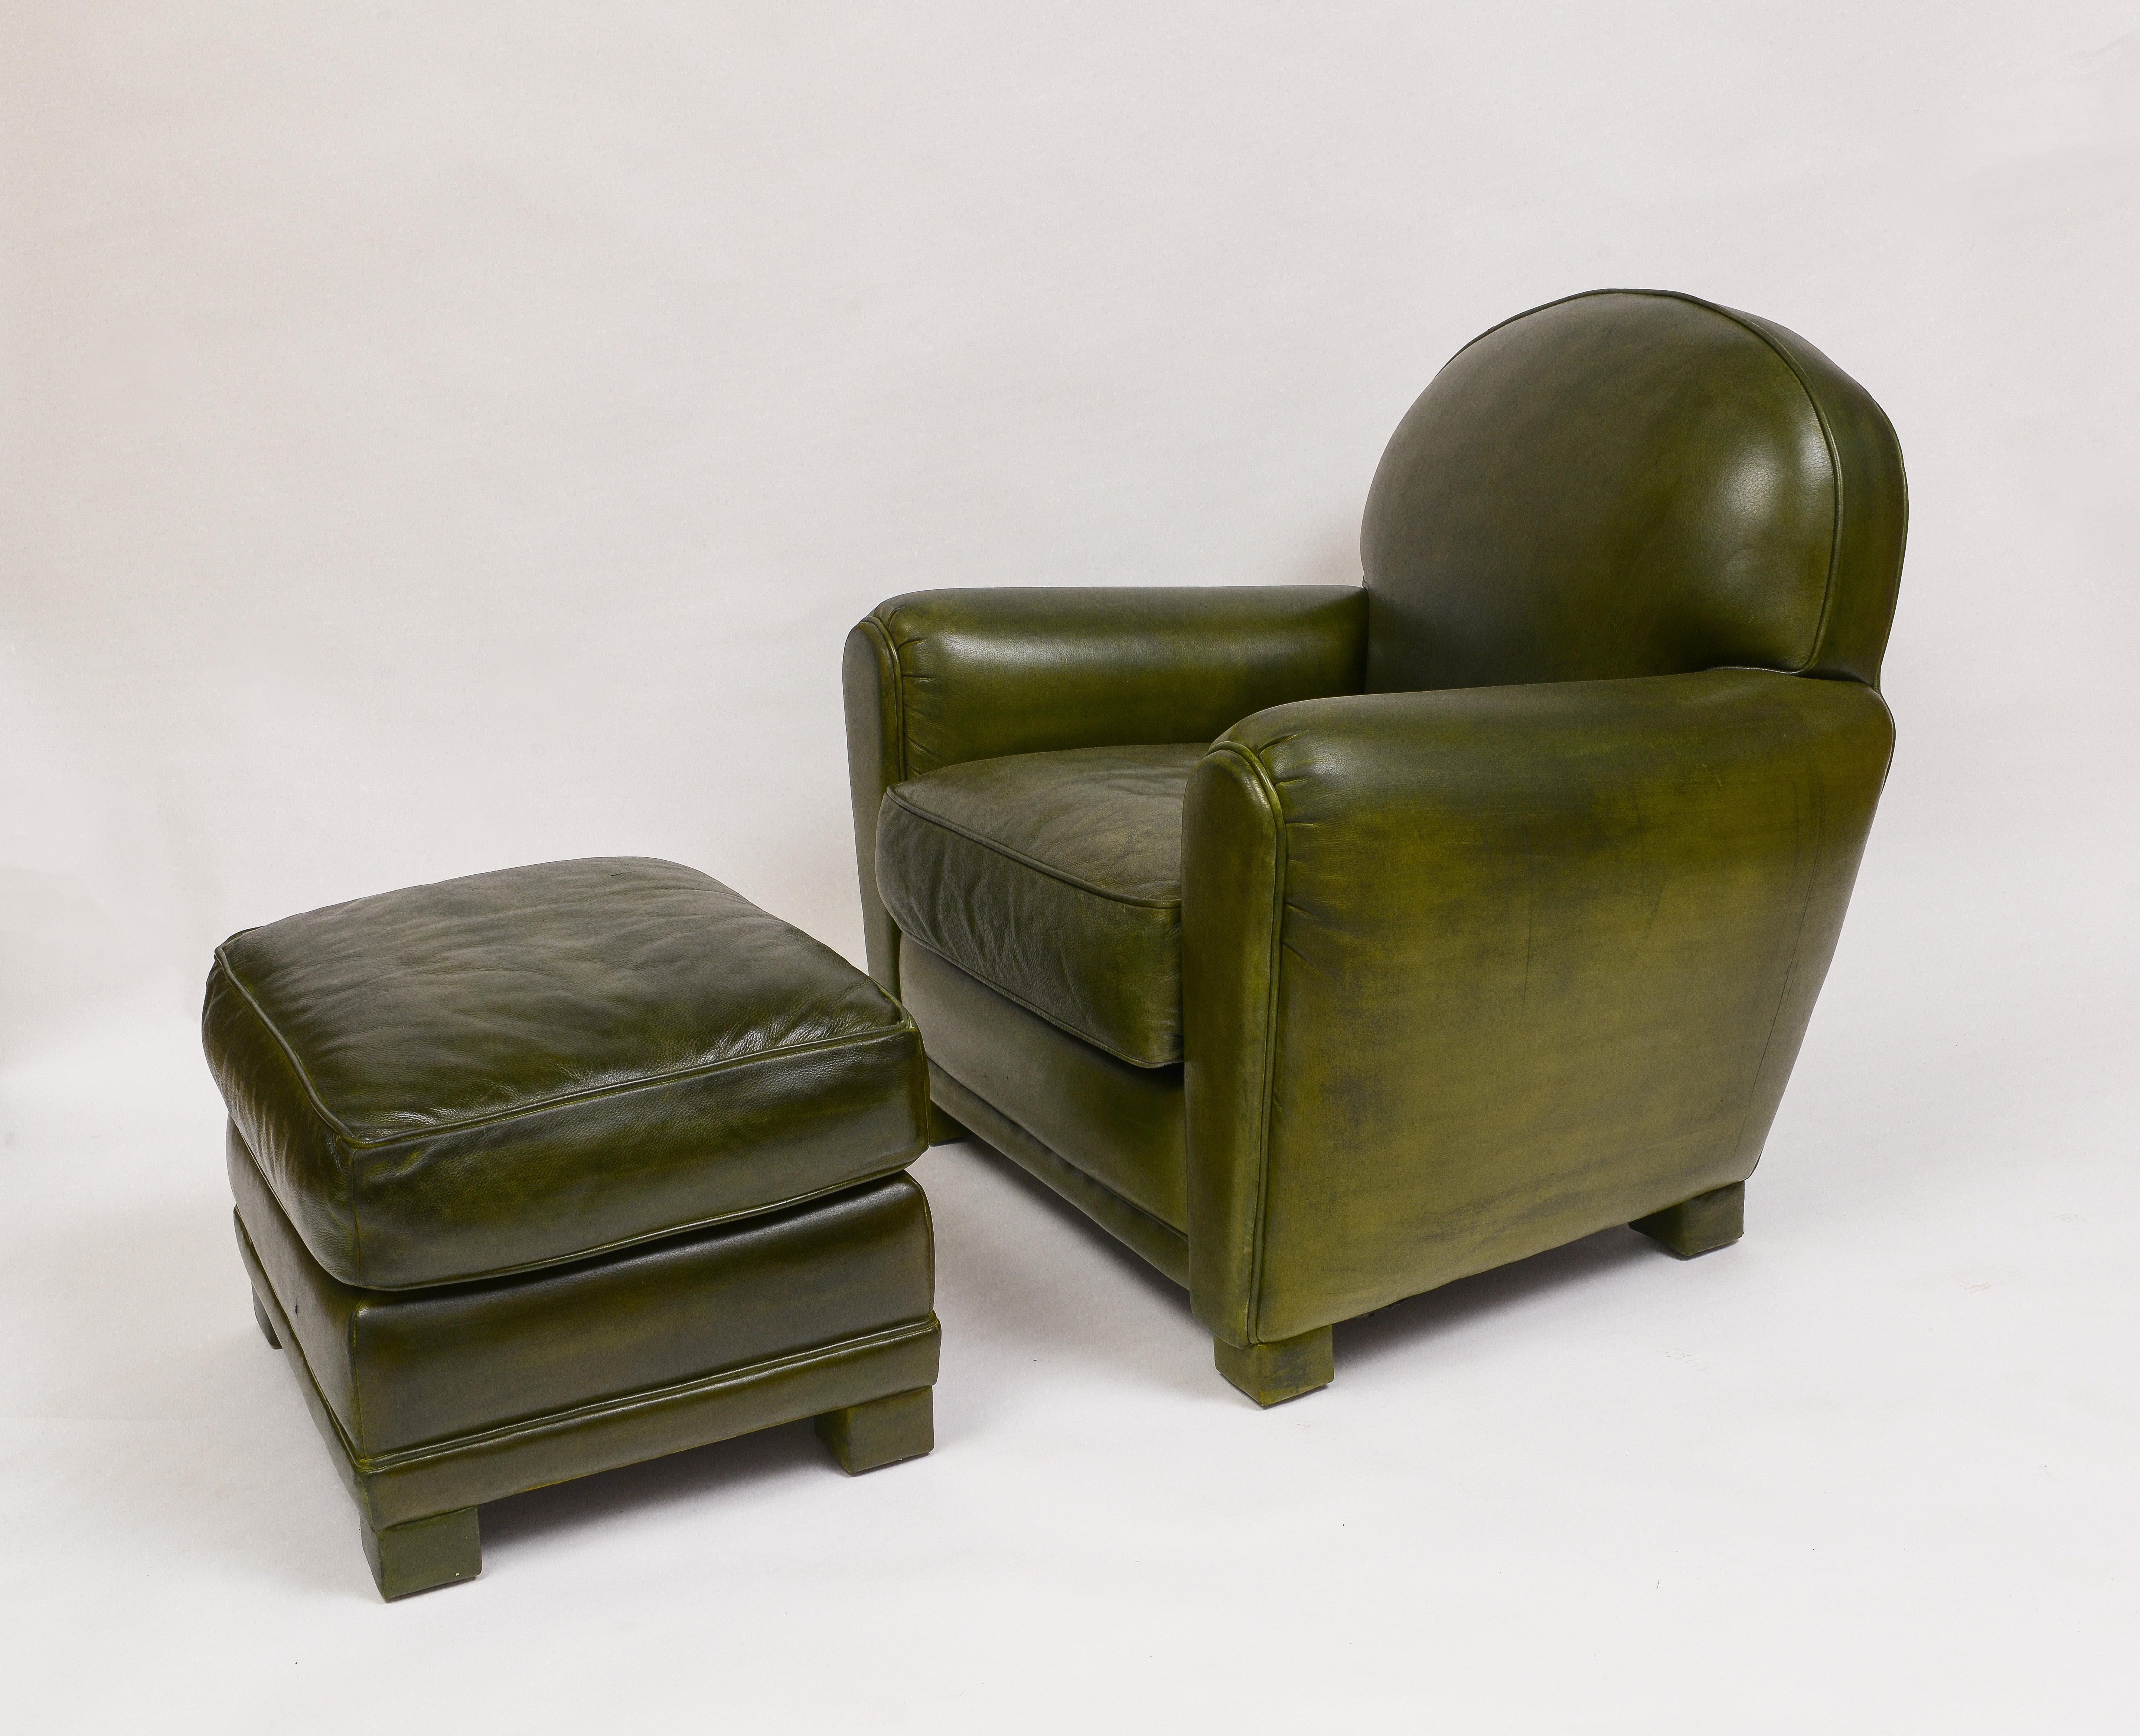 Ein Paar Clubsessel mit passenden Ottomans von Grange
Sehr bequeme, grün gefärbte Stühle
Sessel mit quadratischen, lederummantelten Beinen
Abnehmbare Kissen auf den Stühlen - feste Kissen auf den Hockern
Paar Ottomane sind B 18